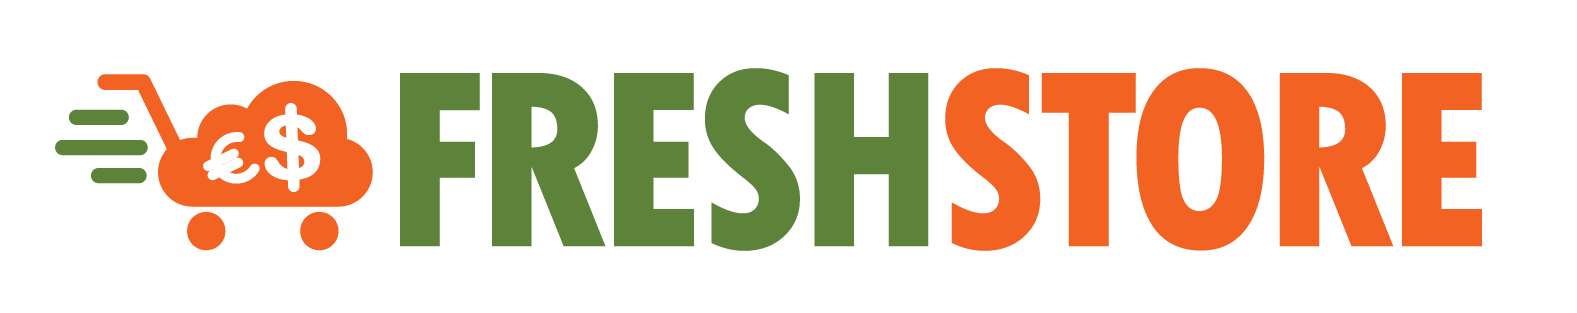 FreshStore Logo